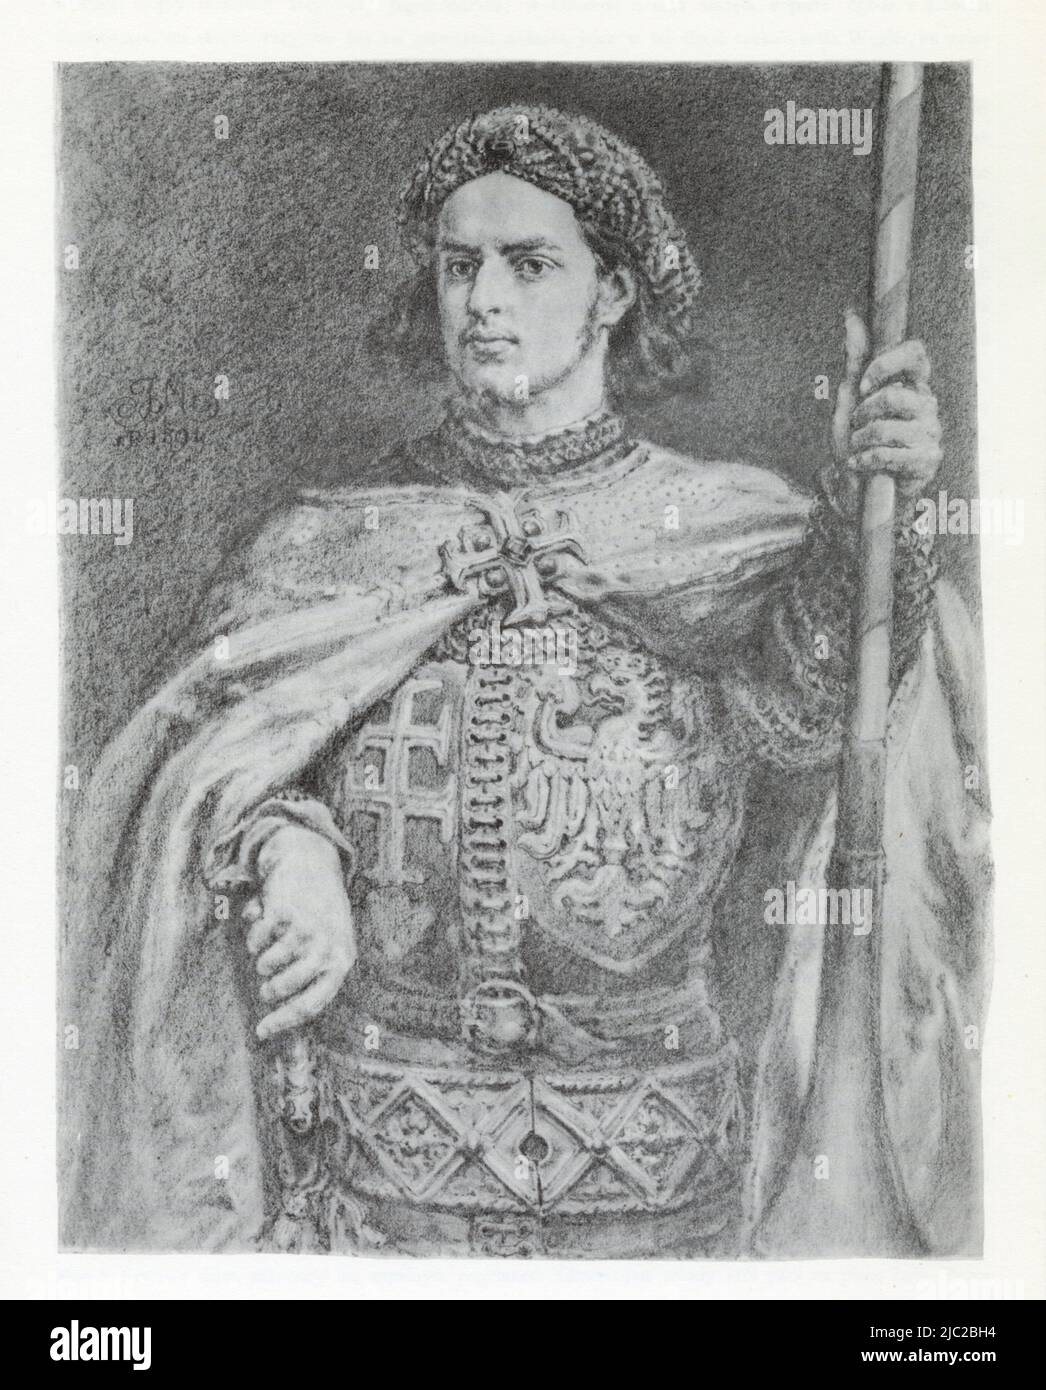 JAN MATEJKO.Władysław III Warneńczyk (ur. 31 października 1424 w Krakowie, zm. 10 listopada 1444 pod Warną) – król Polski, król Węgier jako Władysław Stock Photo